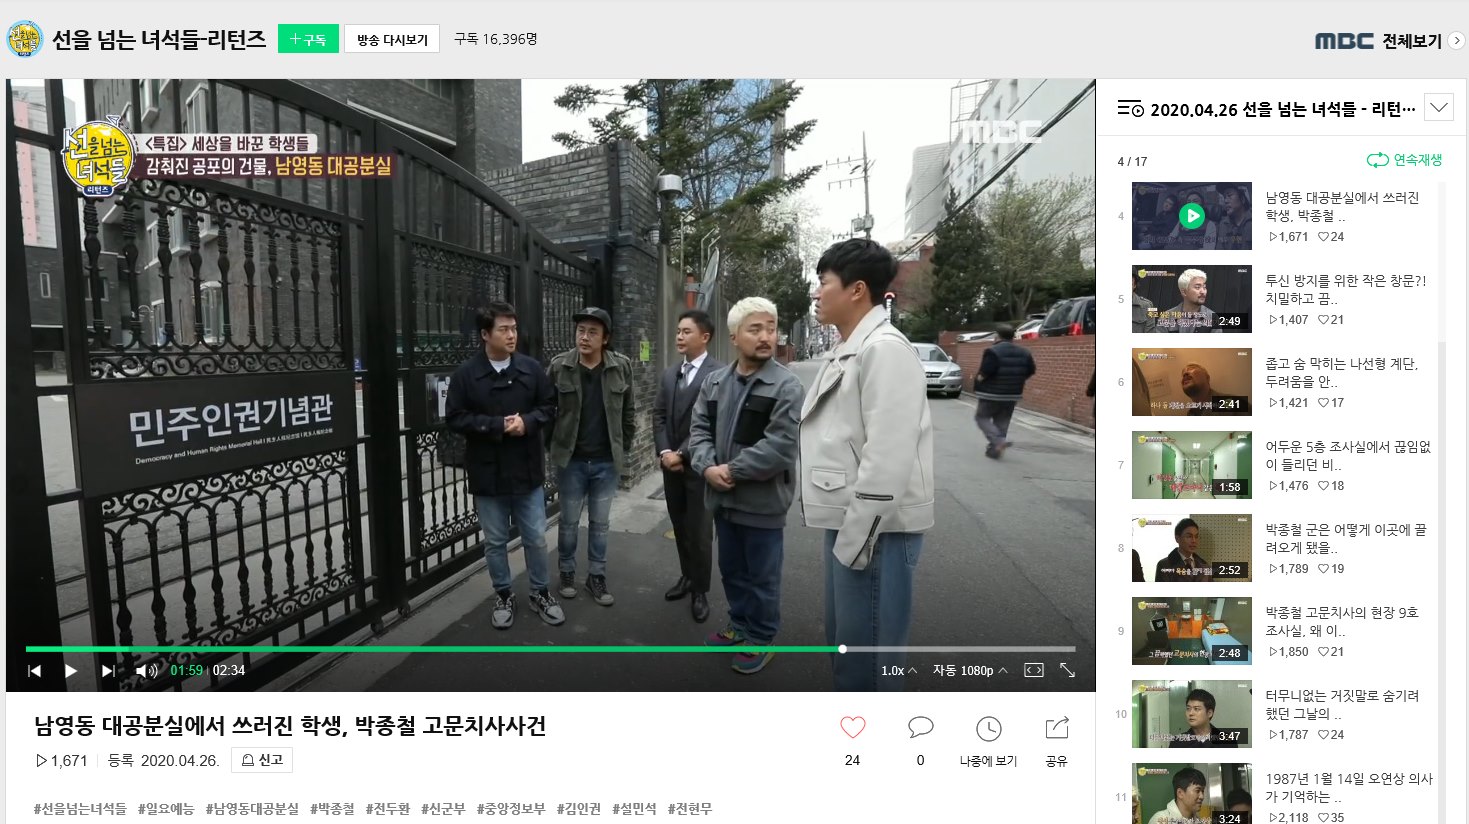  MBC 프로그램 [선을 넘는 녀석들-리턴즈]에 민주인권기념관이 소개 화면